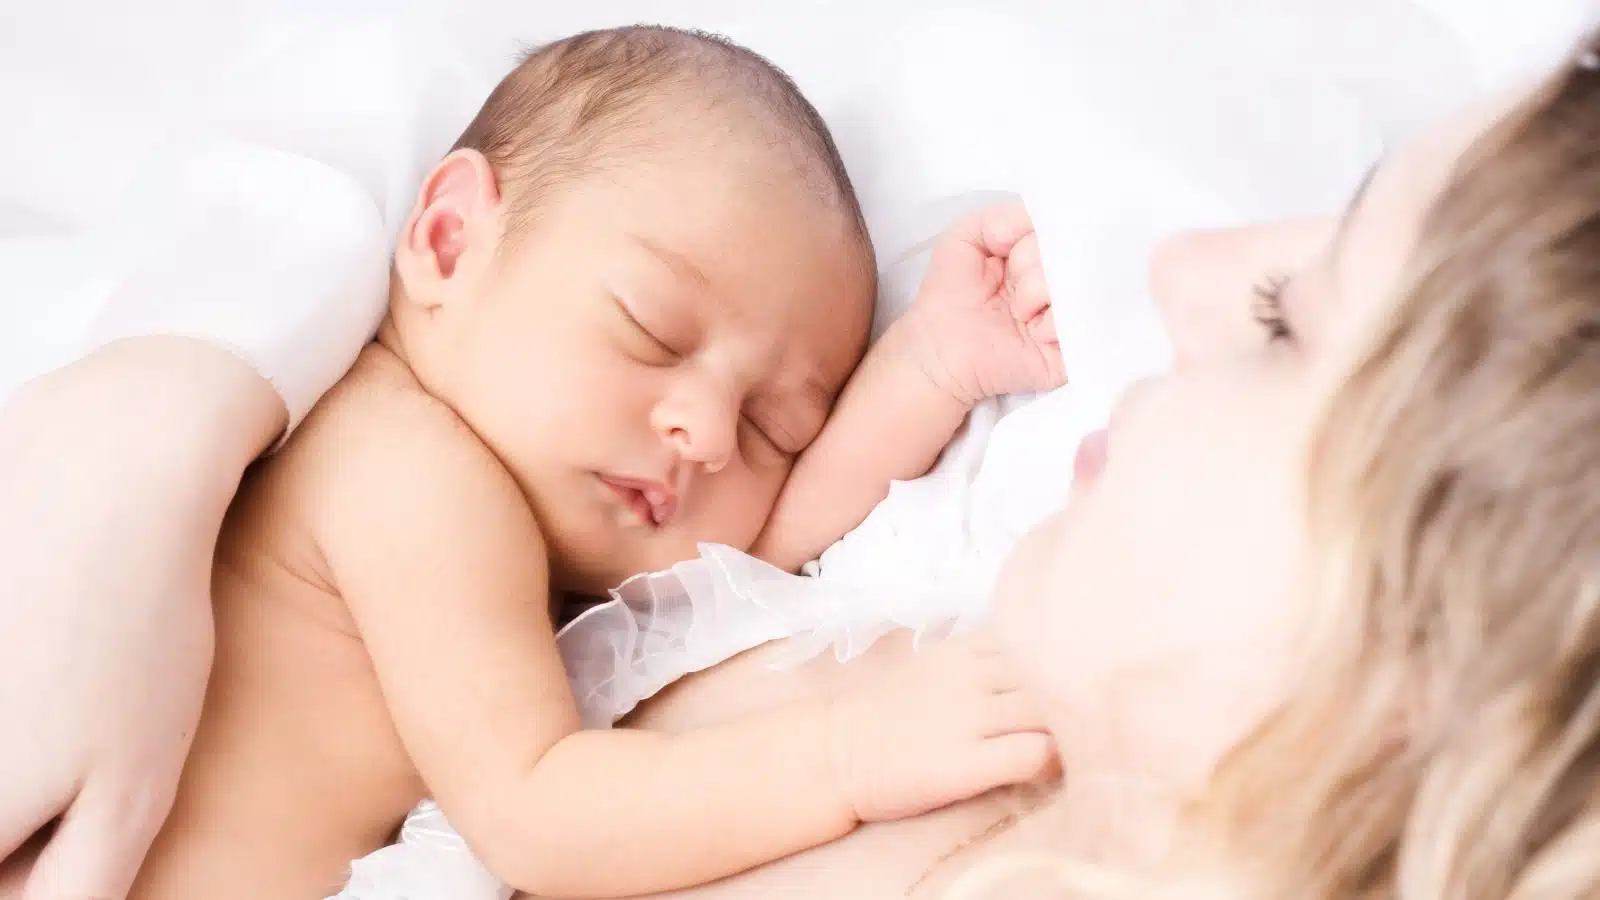 Abbraccio: come i neonati vivono il contatto fisico affettivo - Psicologia